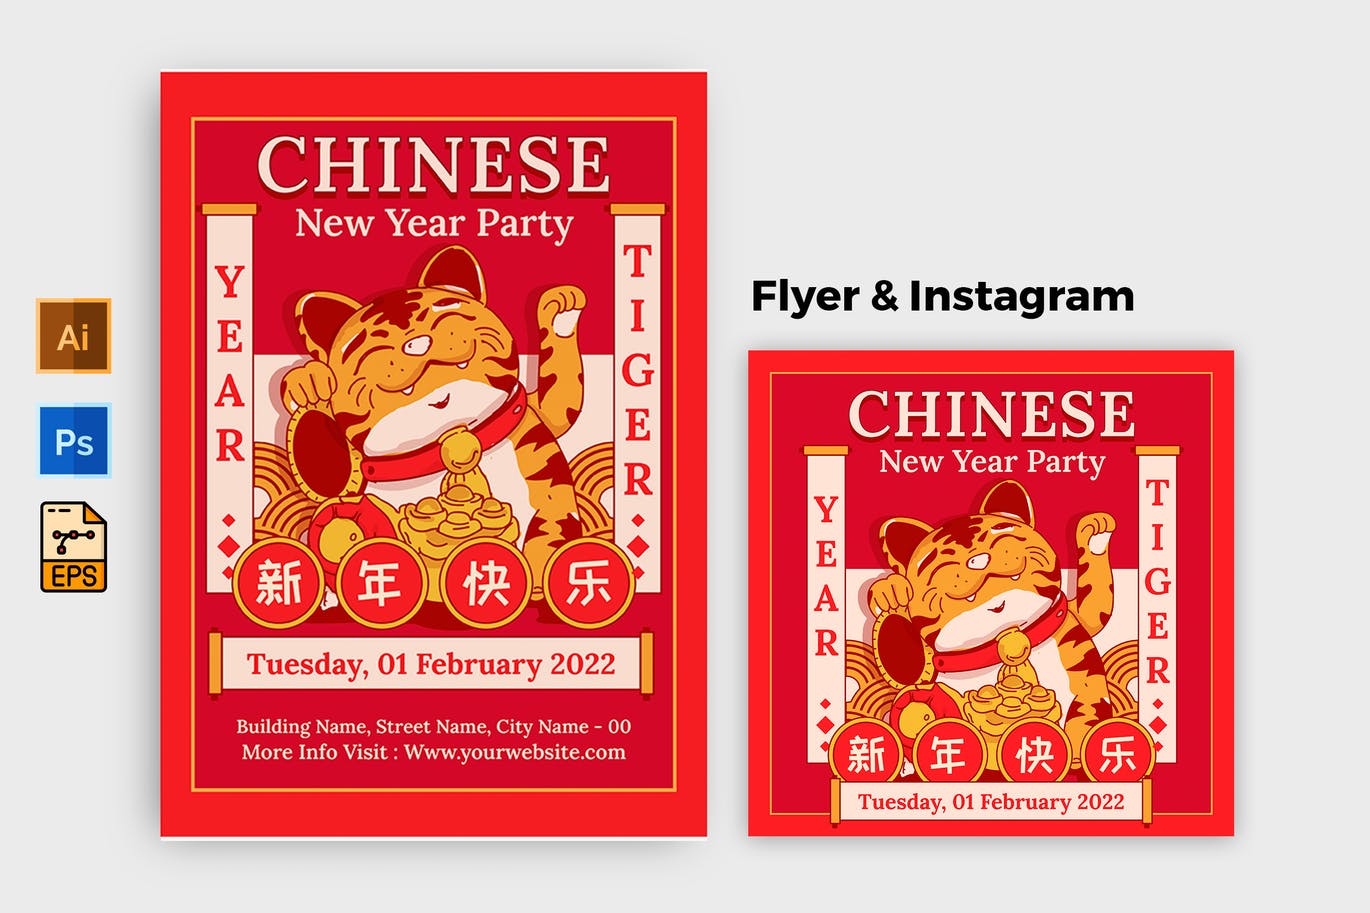 可爱的中国春节昔年海报设计模板-AI, EPS, PSD